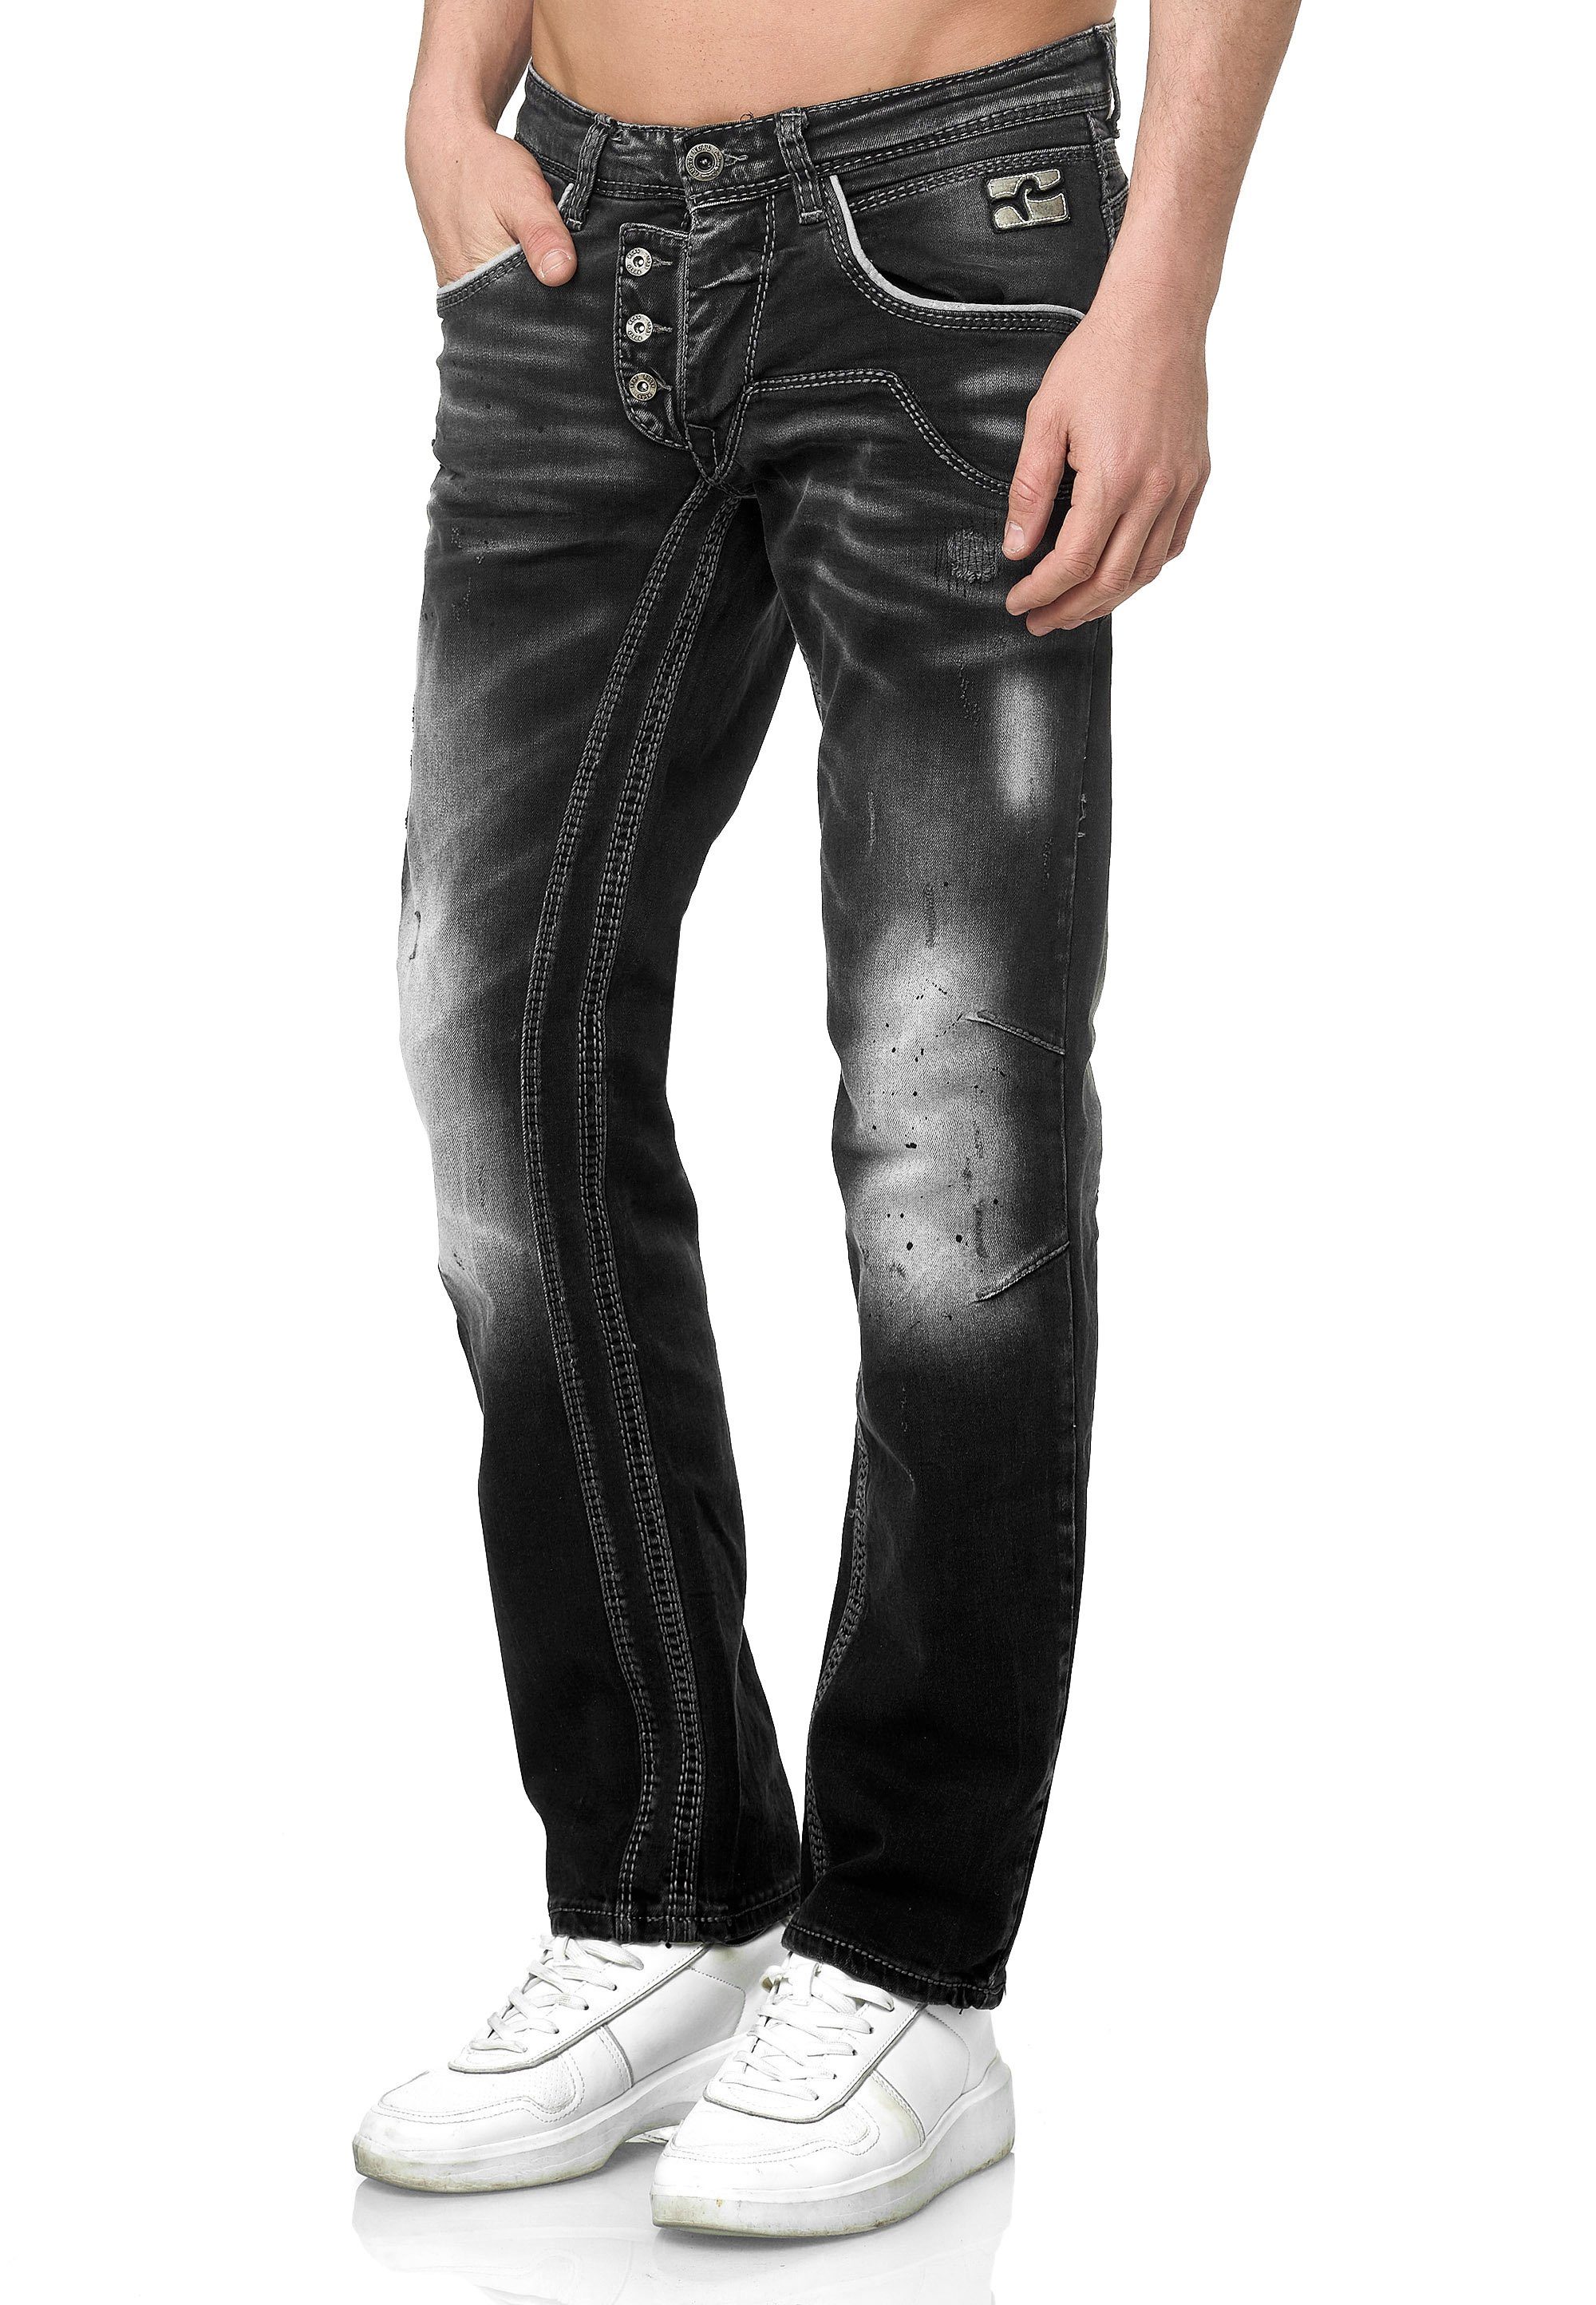 Rusty Neal Straight-Jeans im Straight Fit-Schnitt bequemen